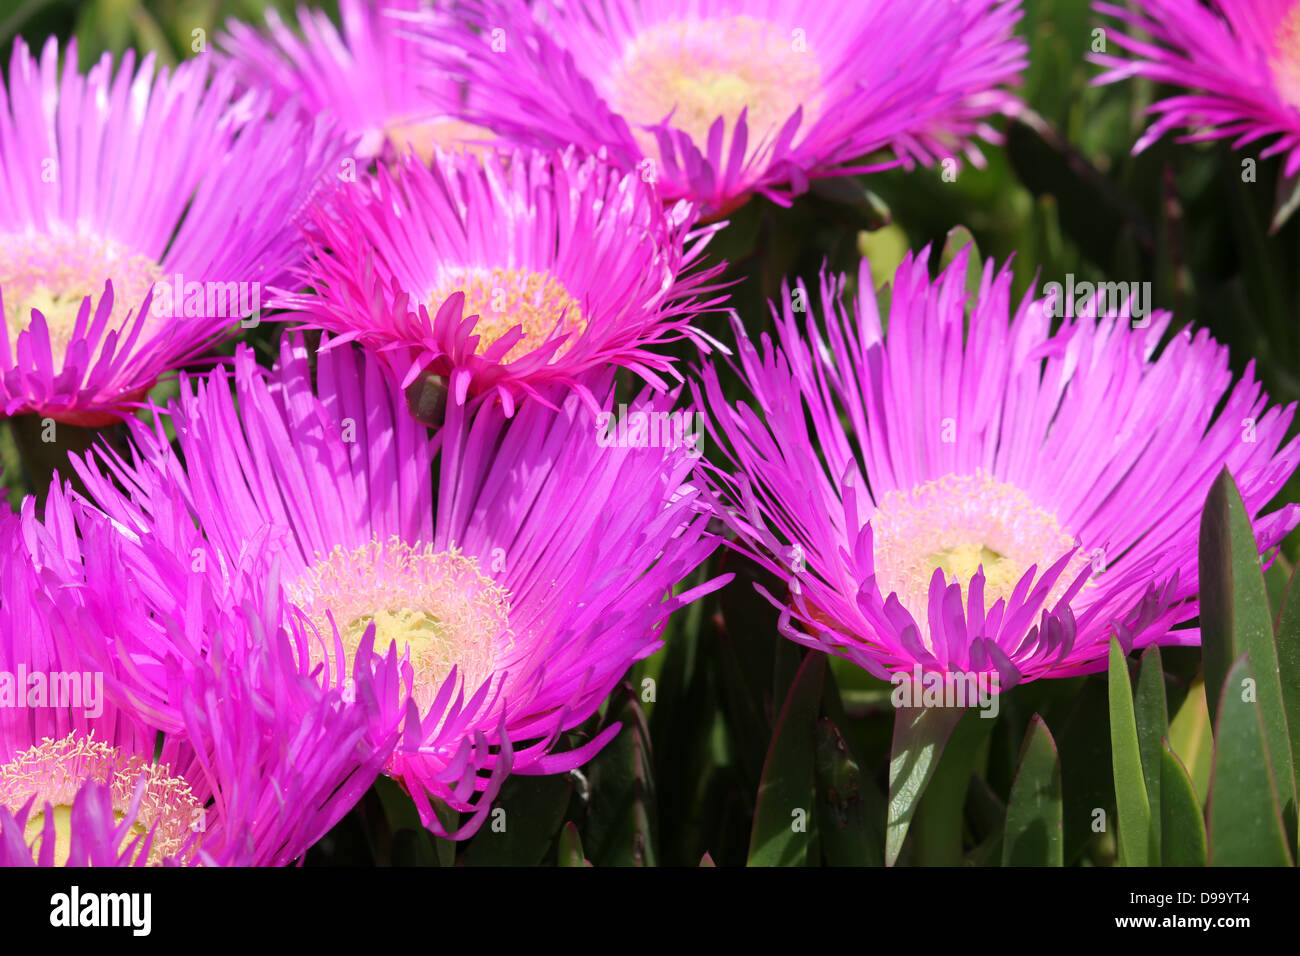 Mesembryanthemum Pink Wild Flowers Close Up Stock Photo